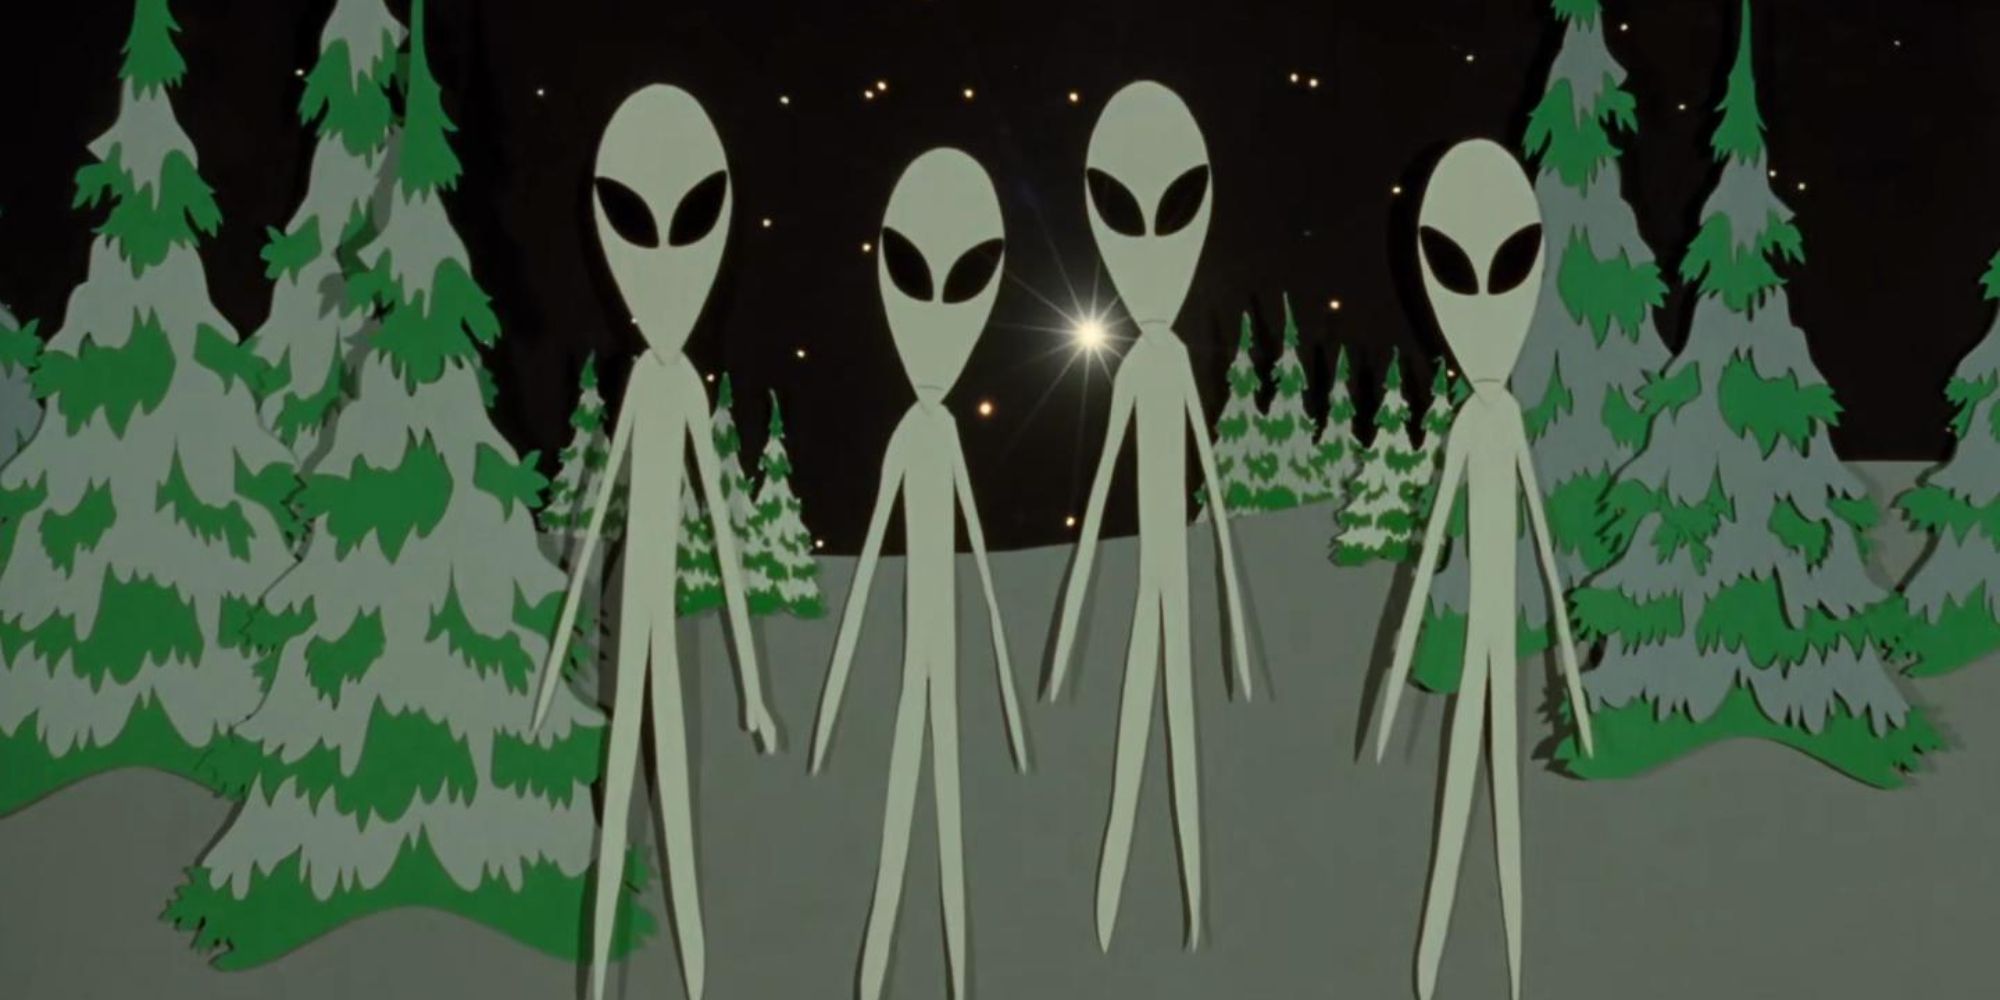 South Park Shot Of Aliens